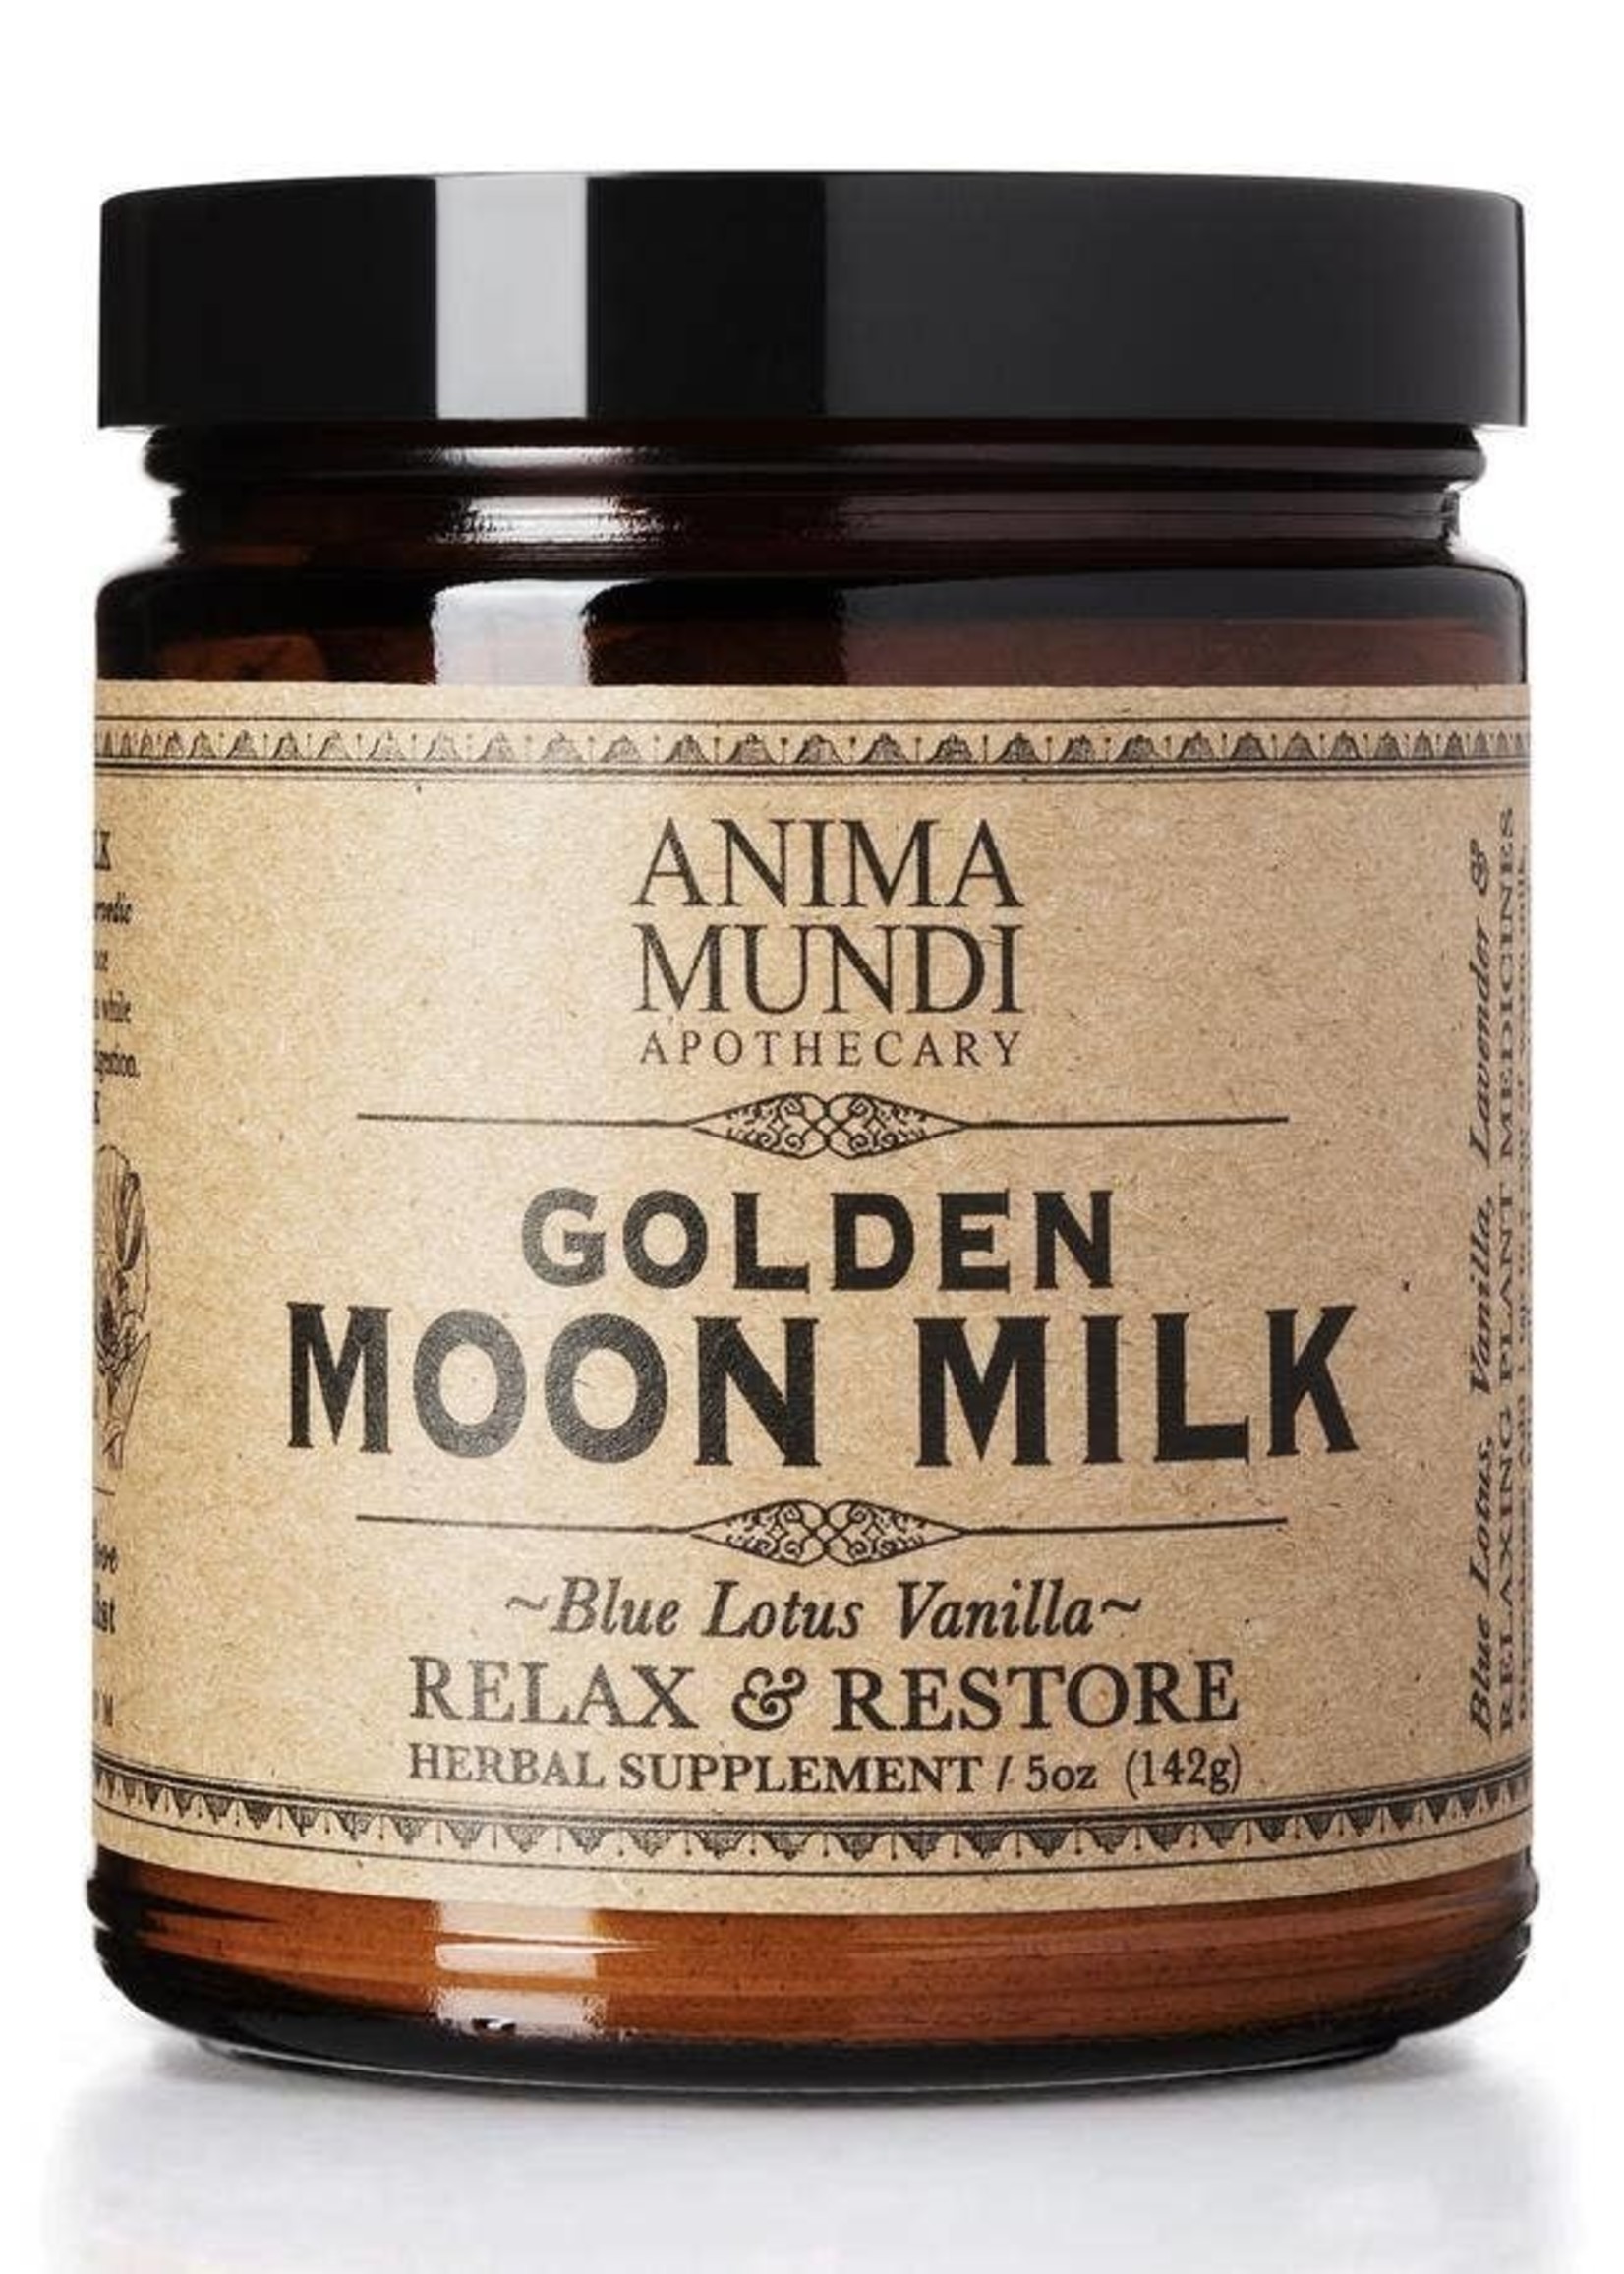 Anima Mundi Apothecary Golden Moon Milk